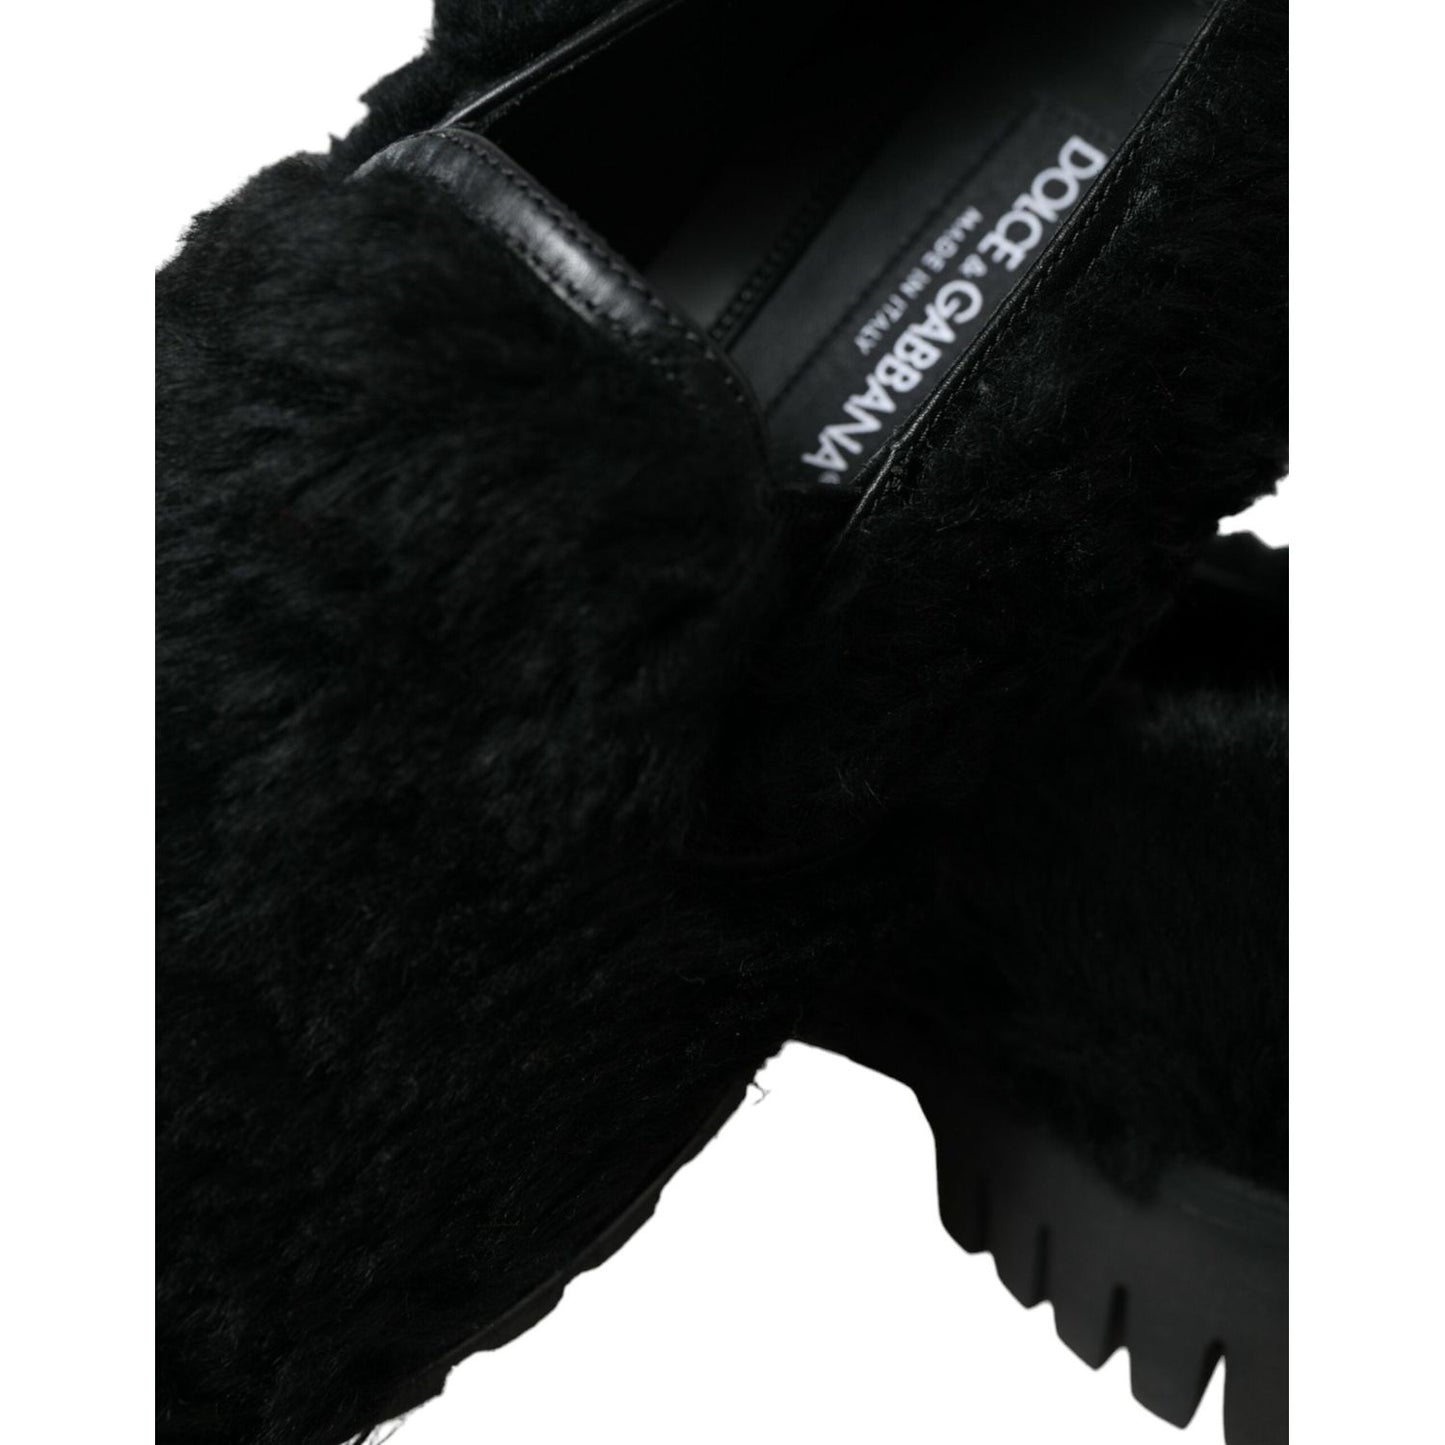 Dolce & Gabbana Elegant Black Fur Slip On Loafers for Men black-fur-leather-slippers-dress-shoes